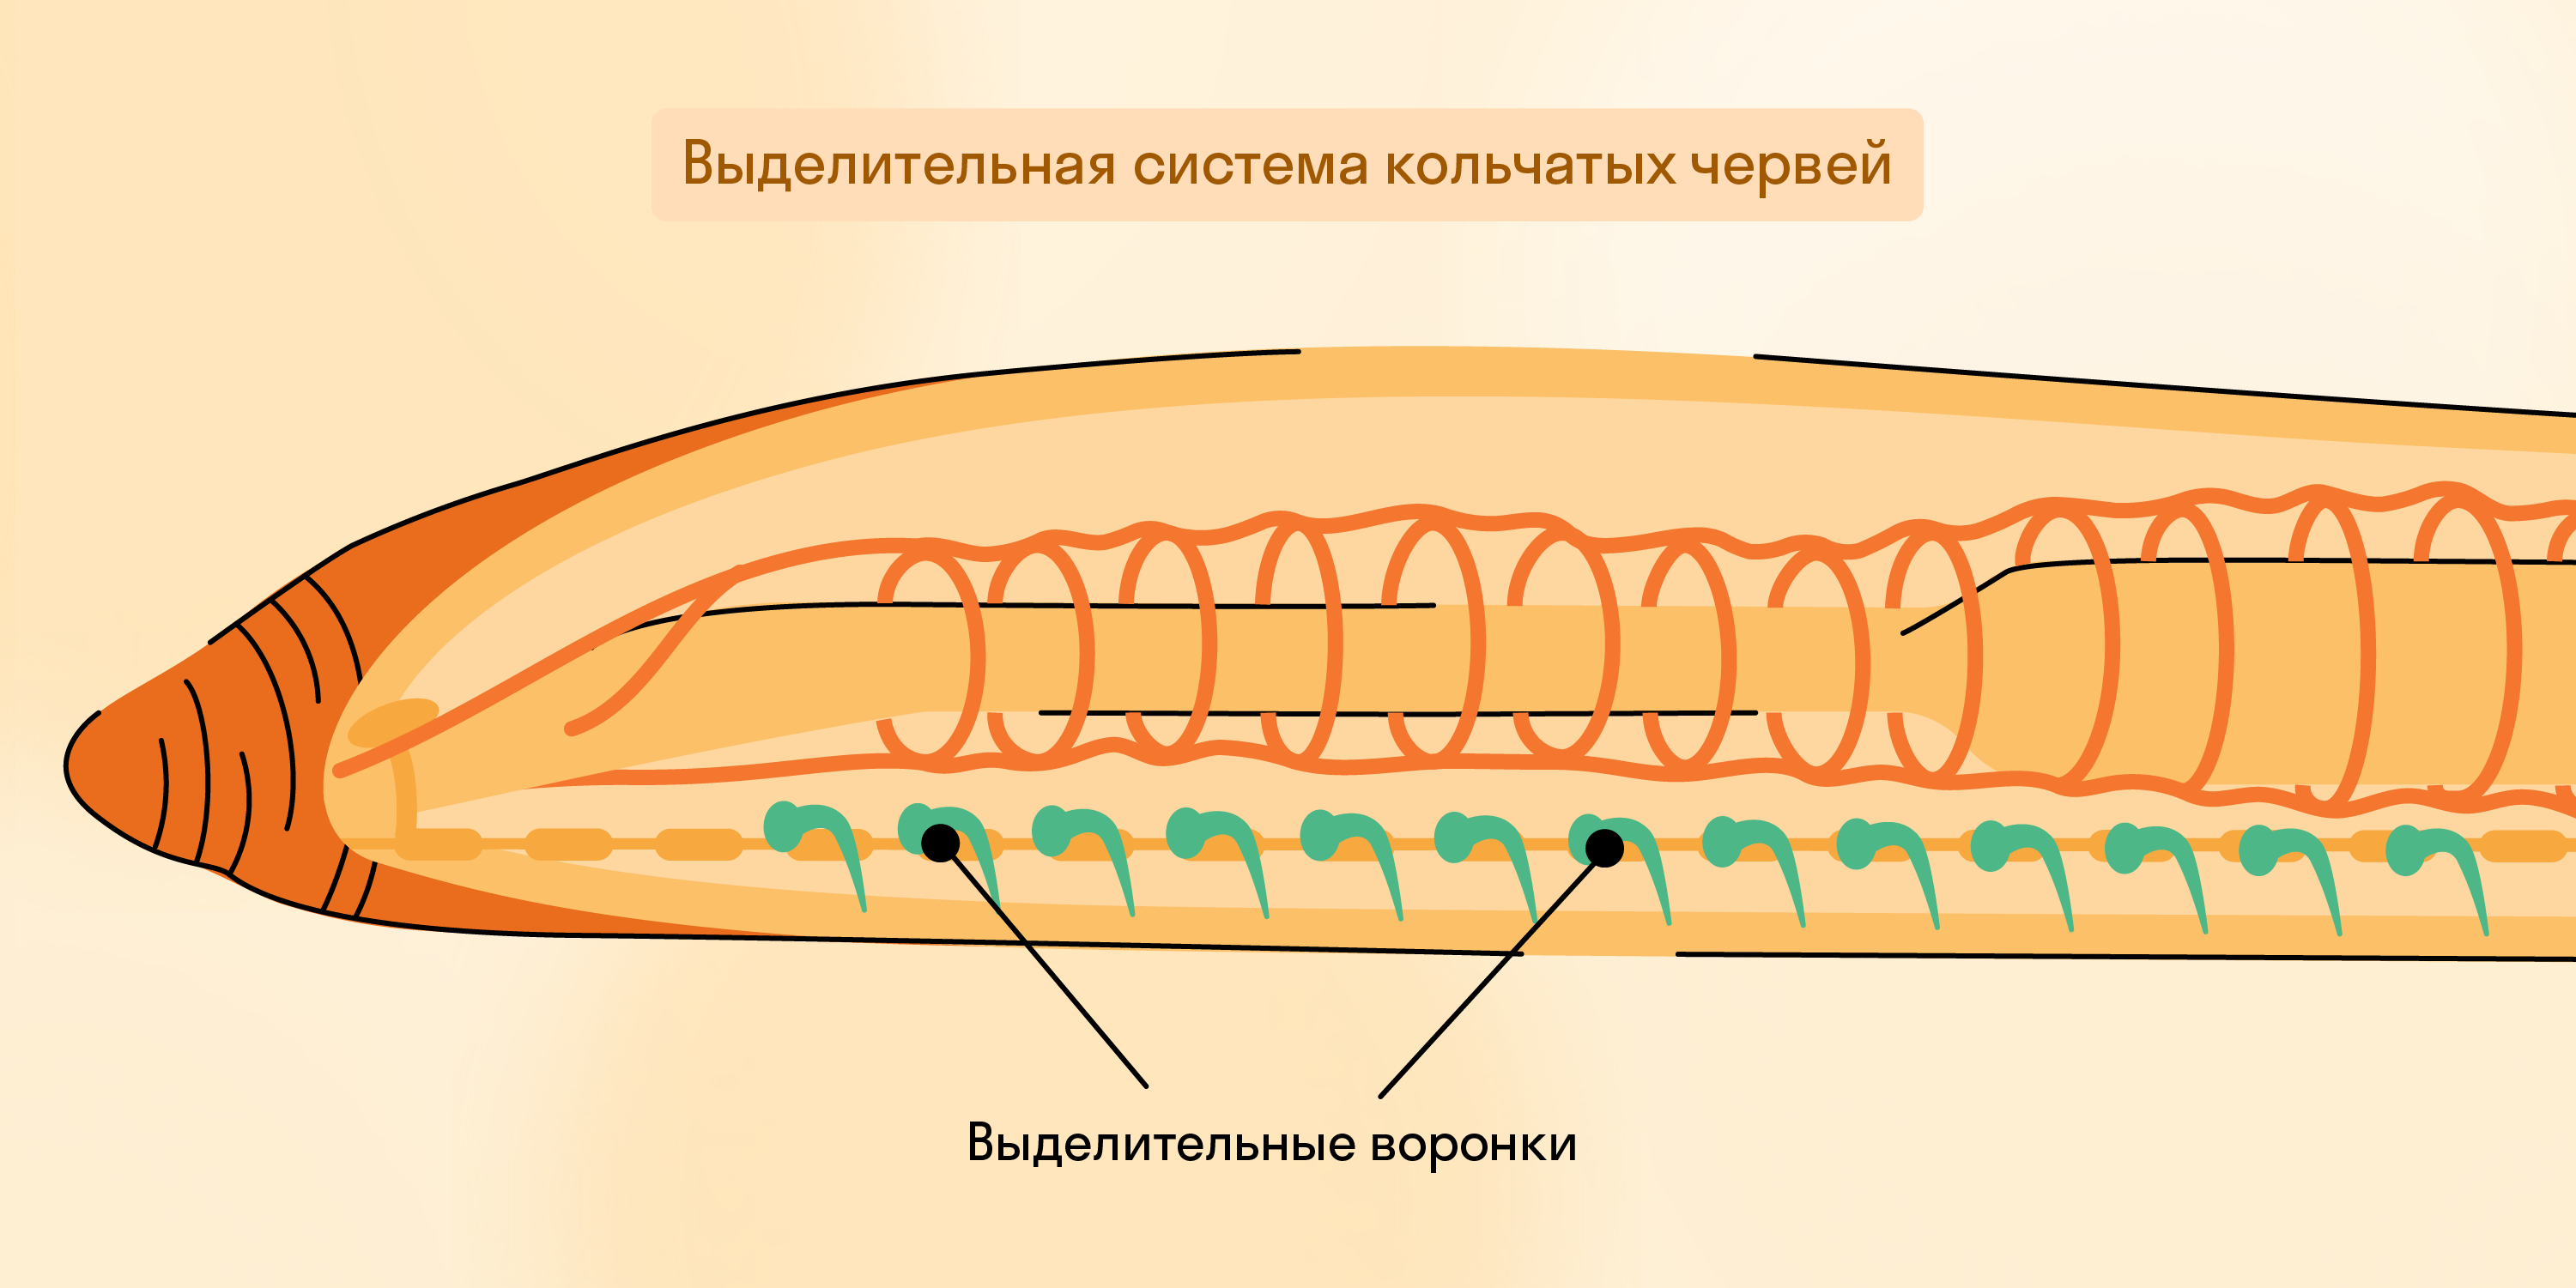 Выделительная система кольчатых червей